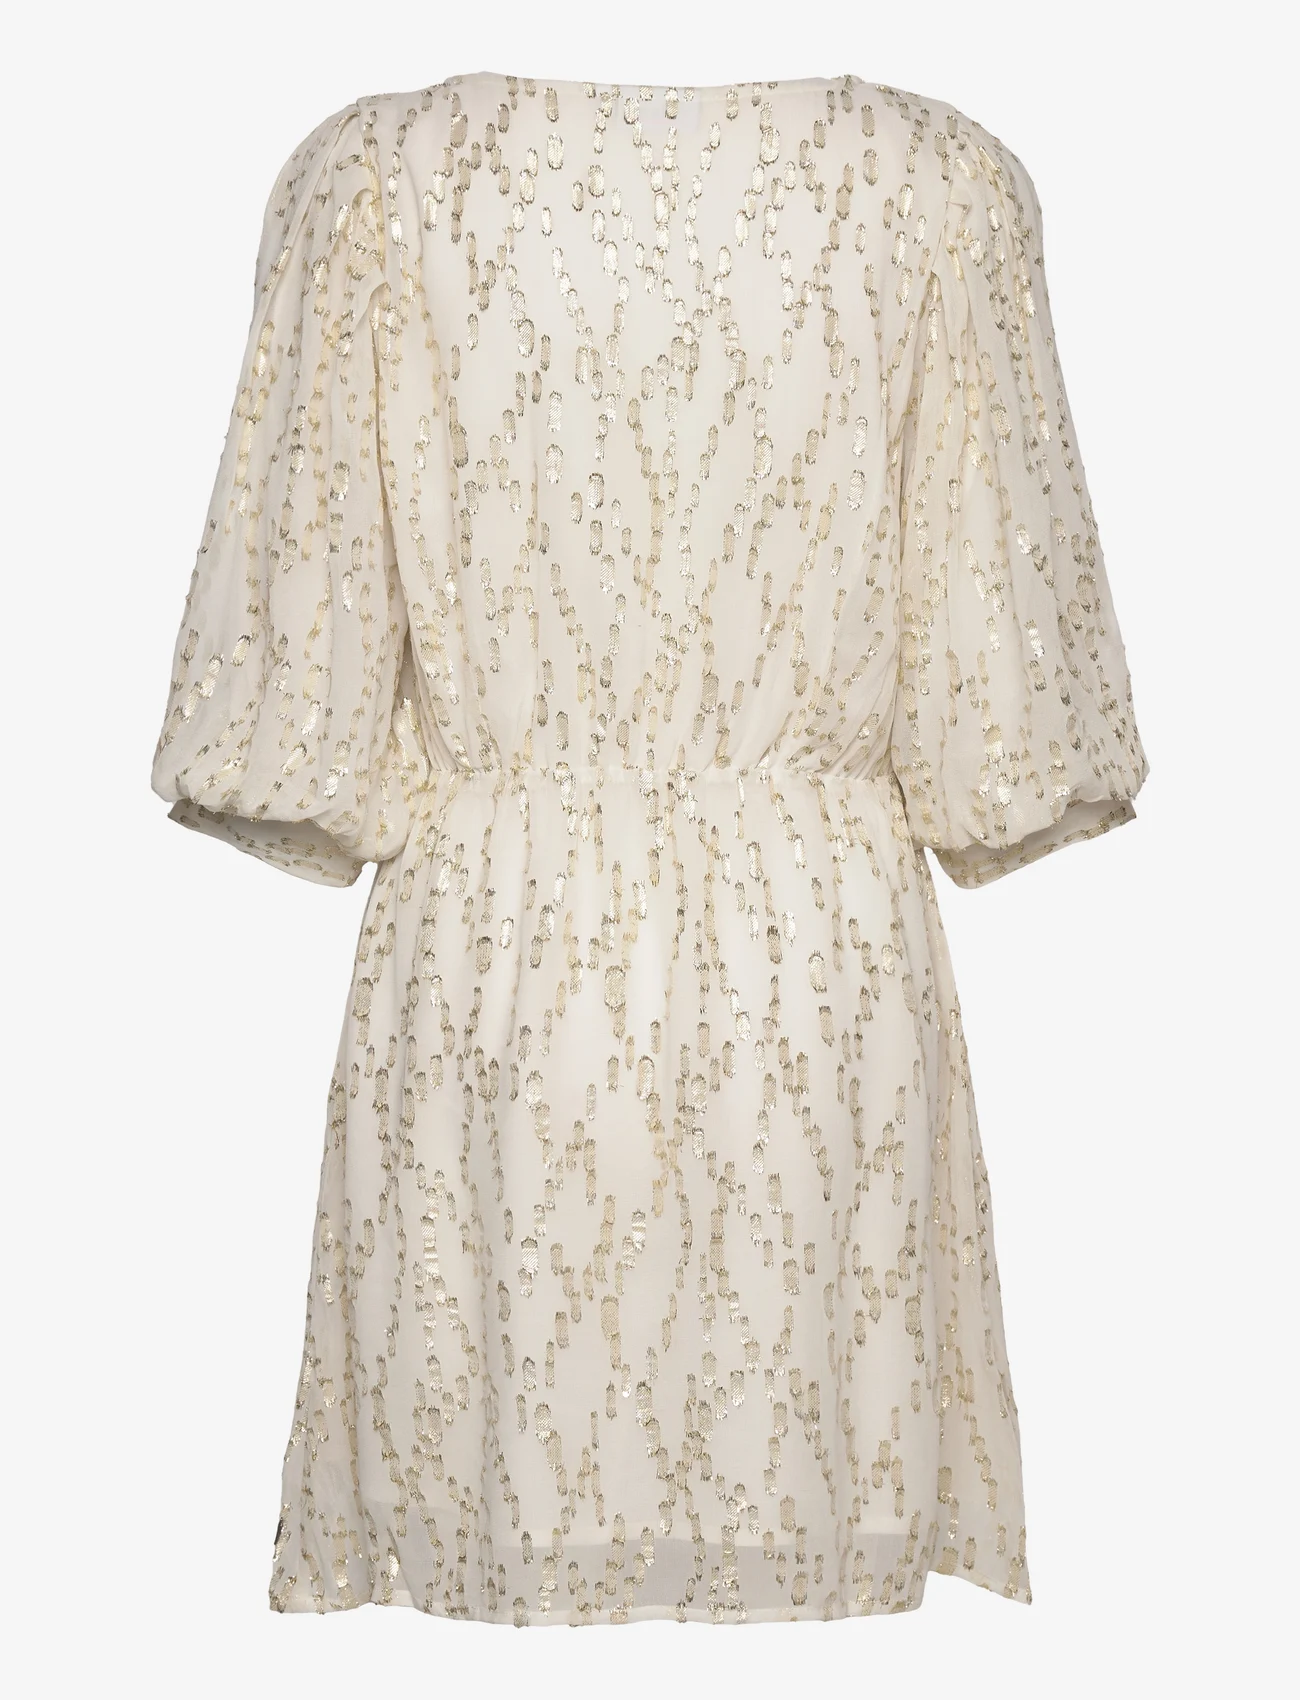 Coster Copenhagen - Short shimmer dress - summer dresses - off white shimmer - 1